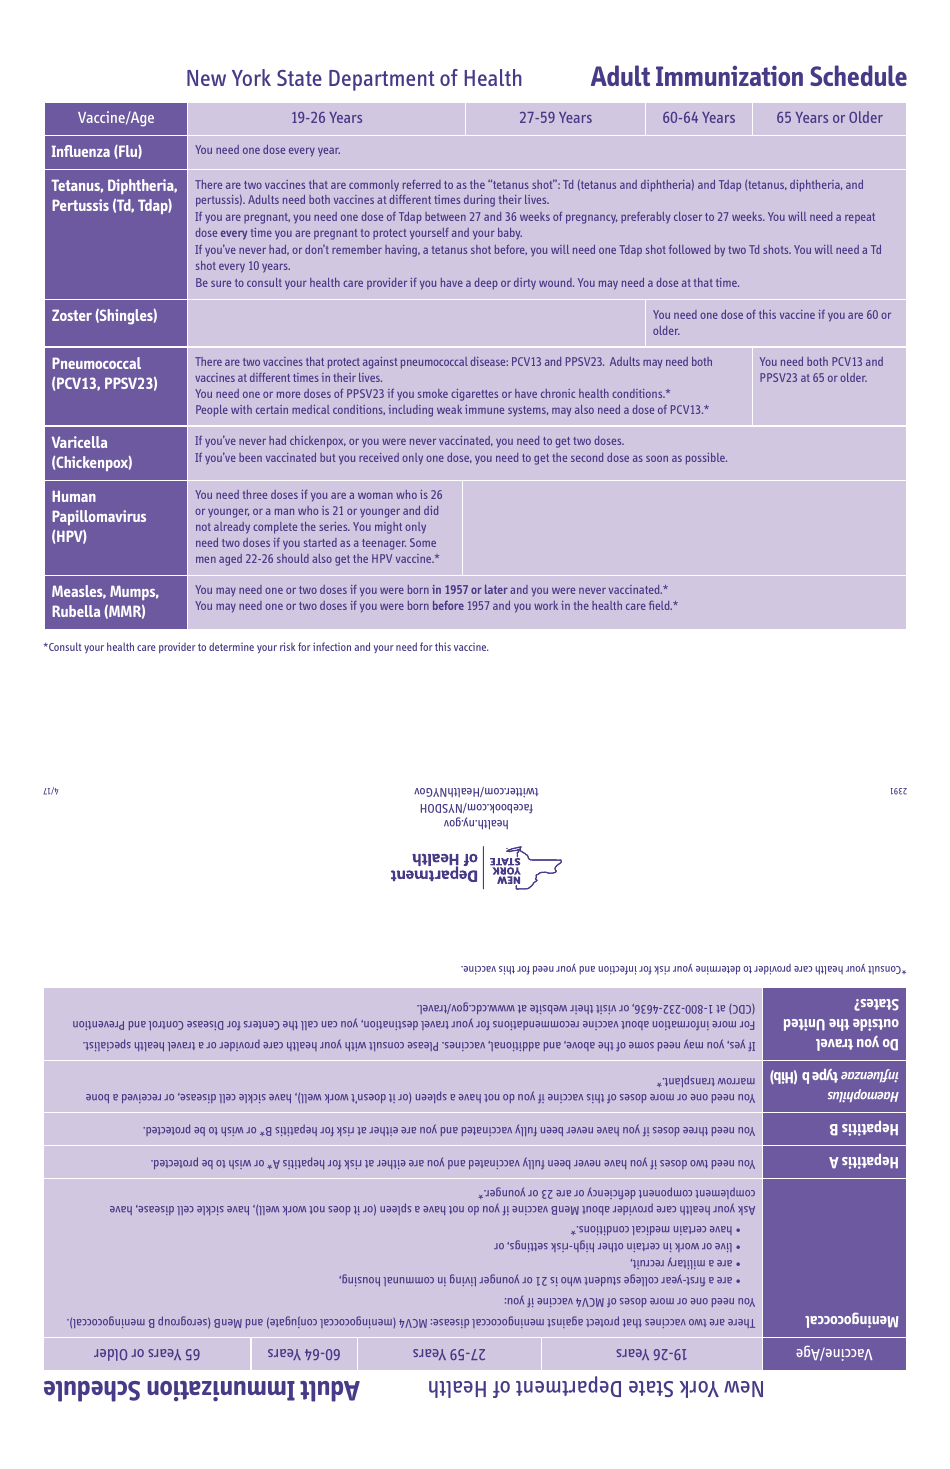 Adult Immunization Schedule - New York, Page 1